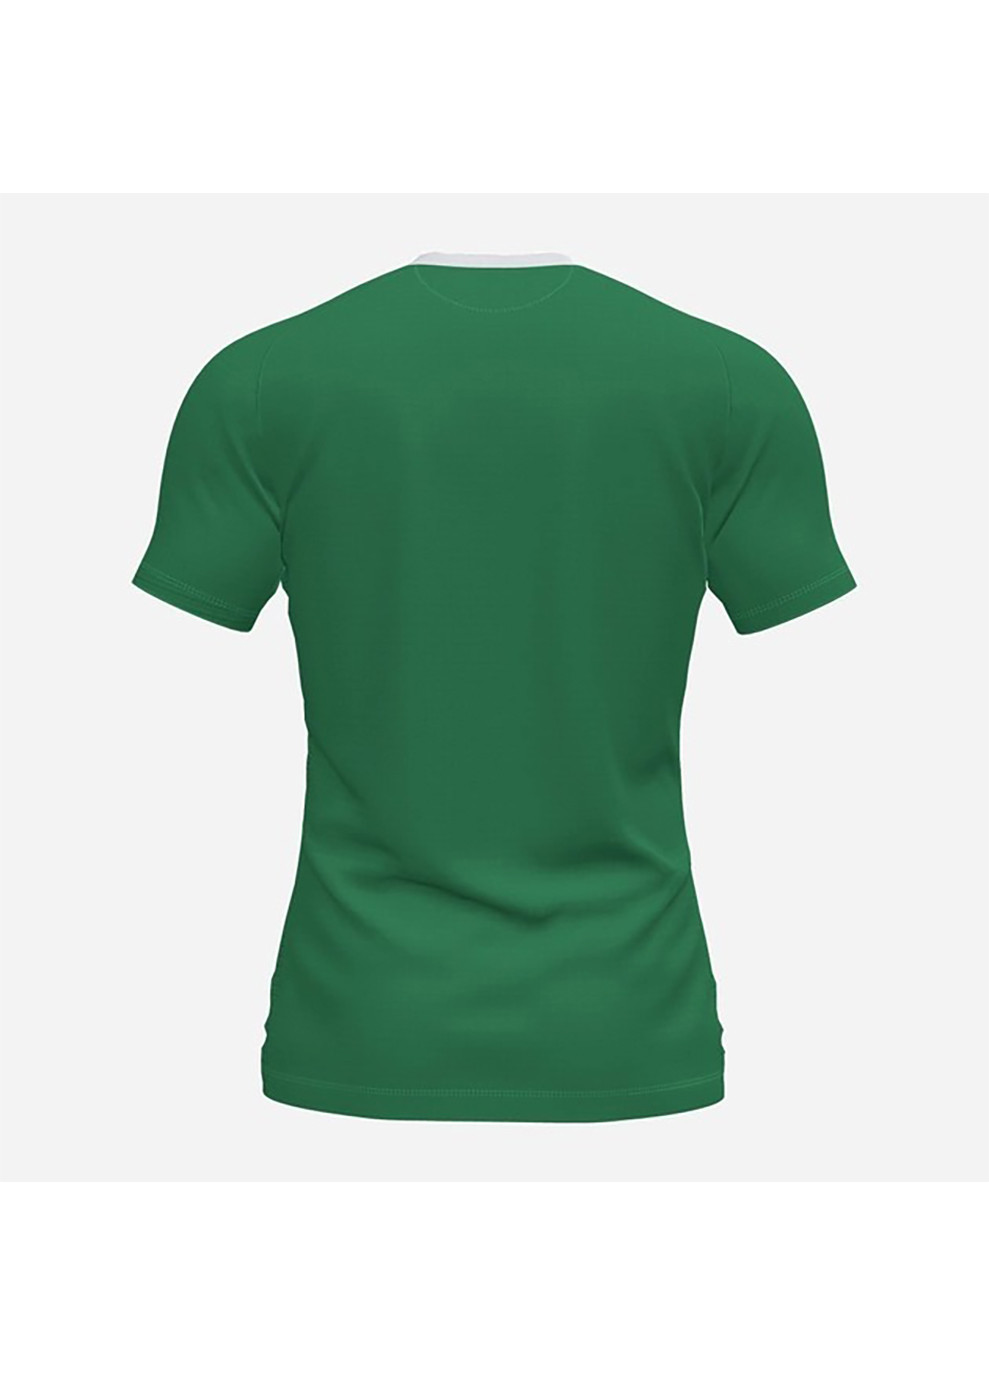 Біла футболка flag ii t-shirt green-white s/s зелений,білий Joma